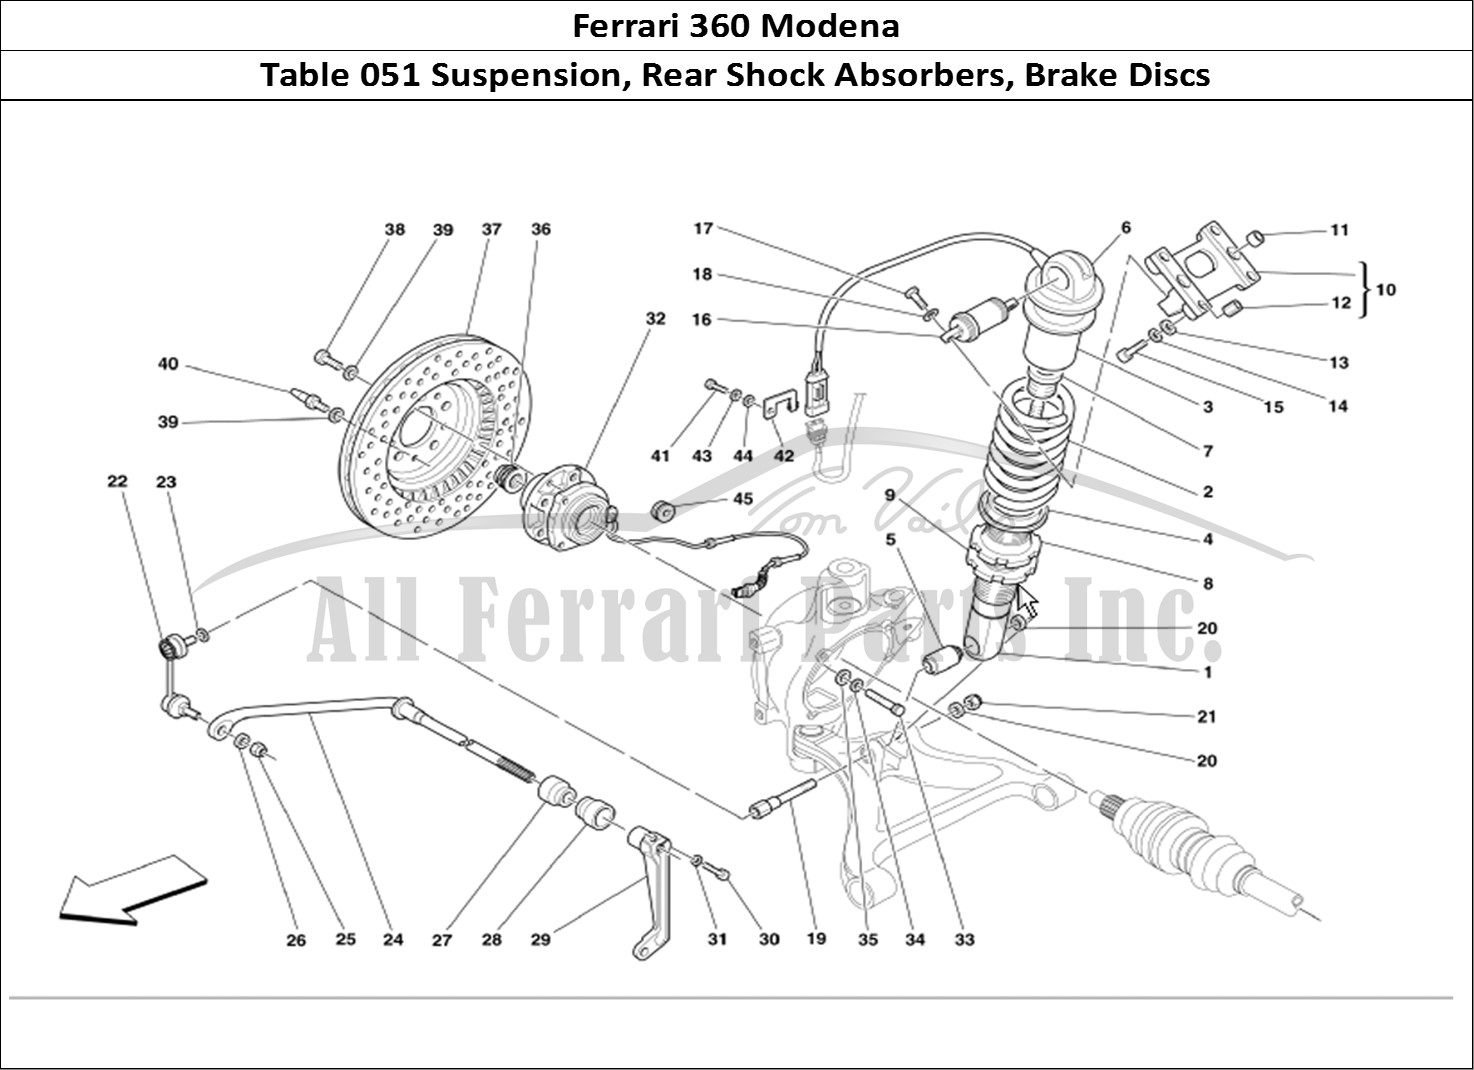 Ferrari Parts Ferrari 360 Modena Page 051 Rear Suspension Shock Abs